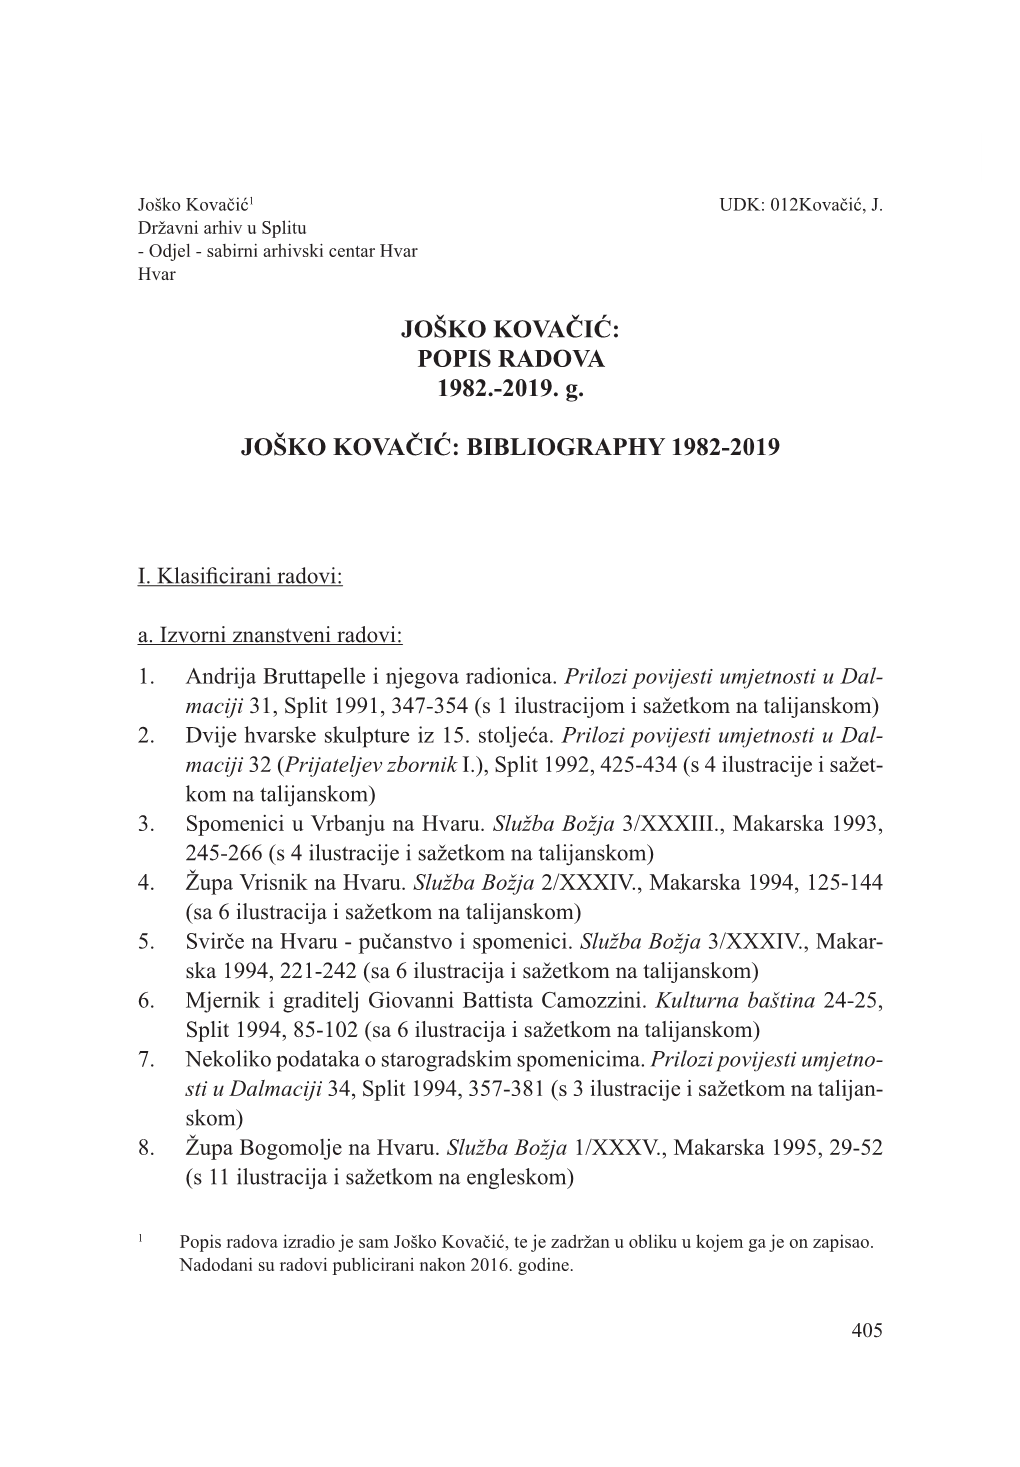 JOŠKO KOVAČIĆ: POPIS RADOVA 1982.-2019. G. JOŠKO KOVAČIĆ: BIBLIOGRAPHY 1982-2019